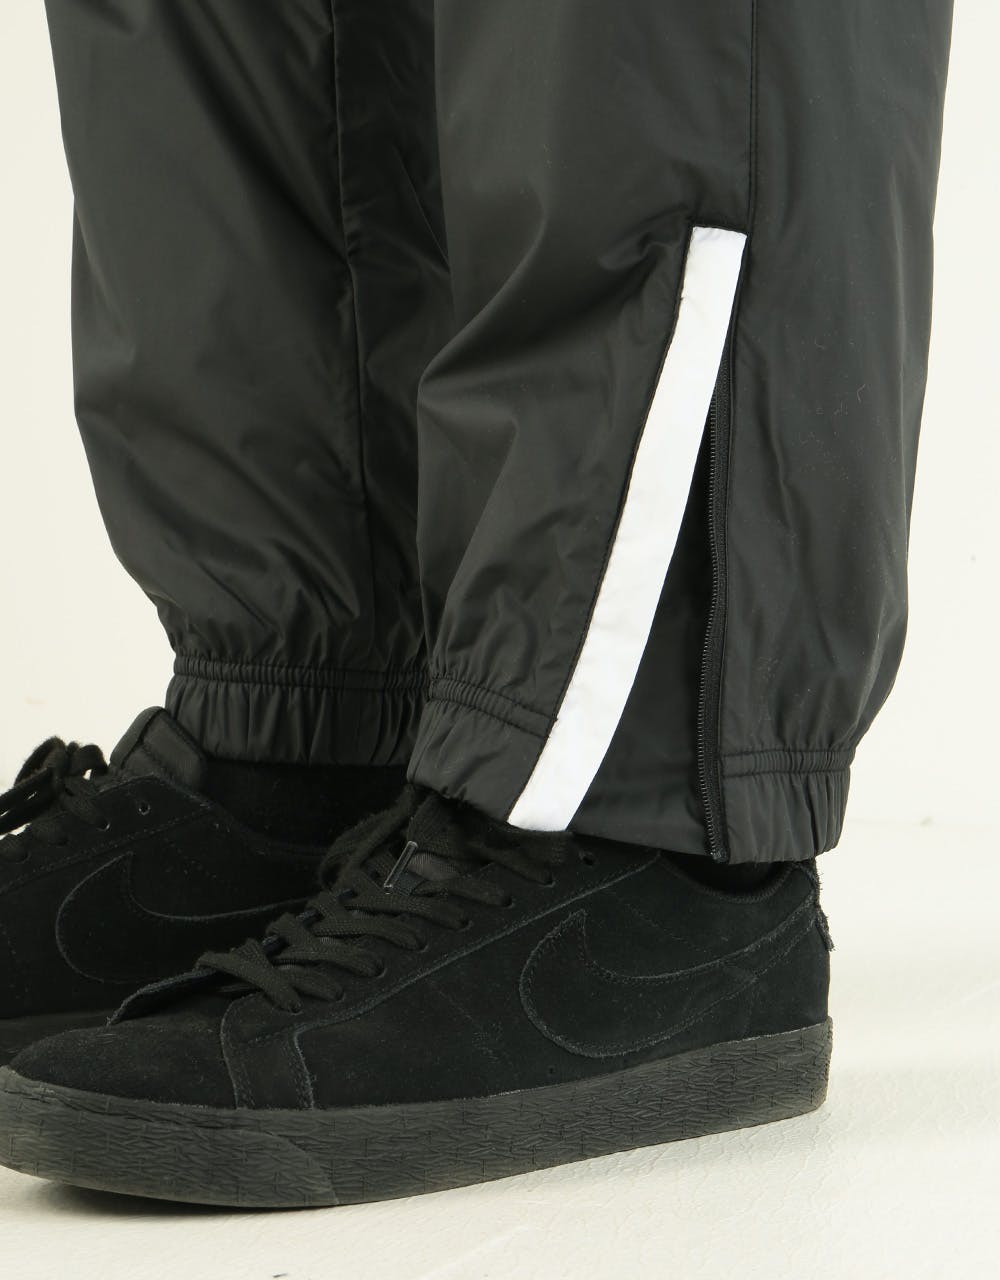 Nike SB Shield Swoosh Track Pant - Black/White/White